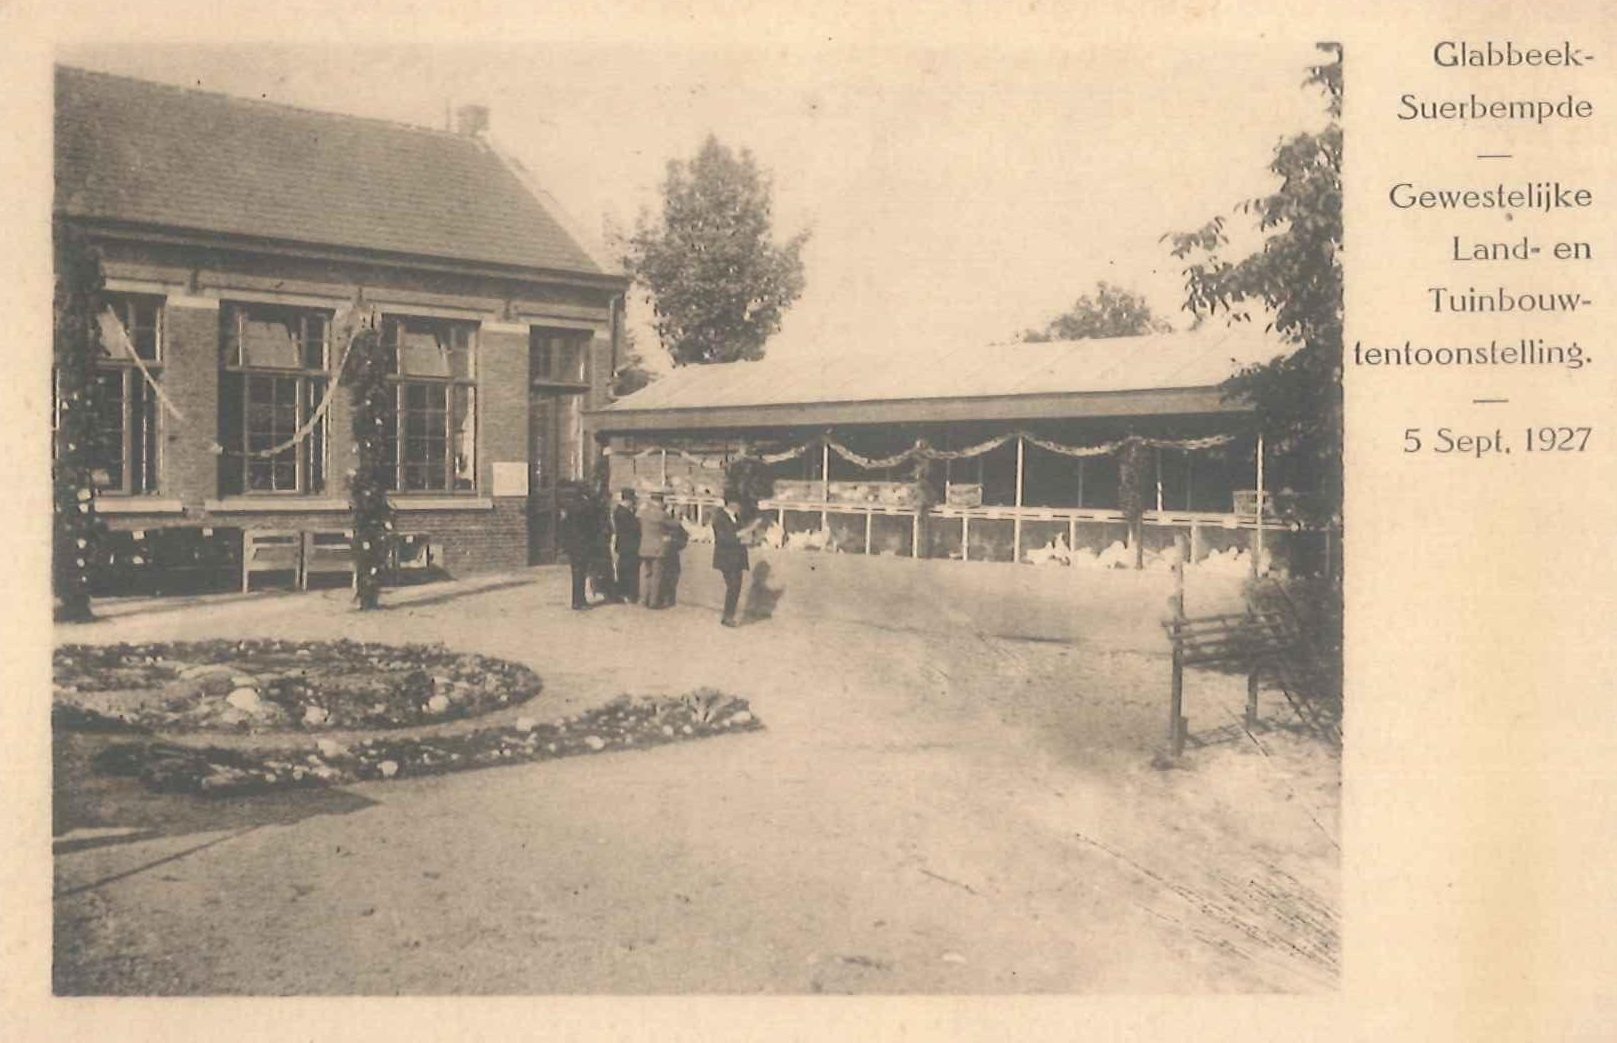 Foto 11 - Landbouwtentoonstelling 1927